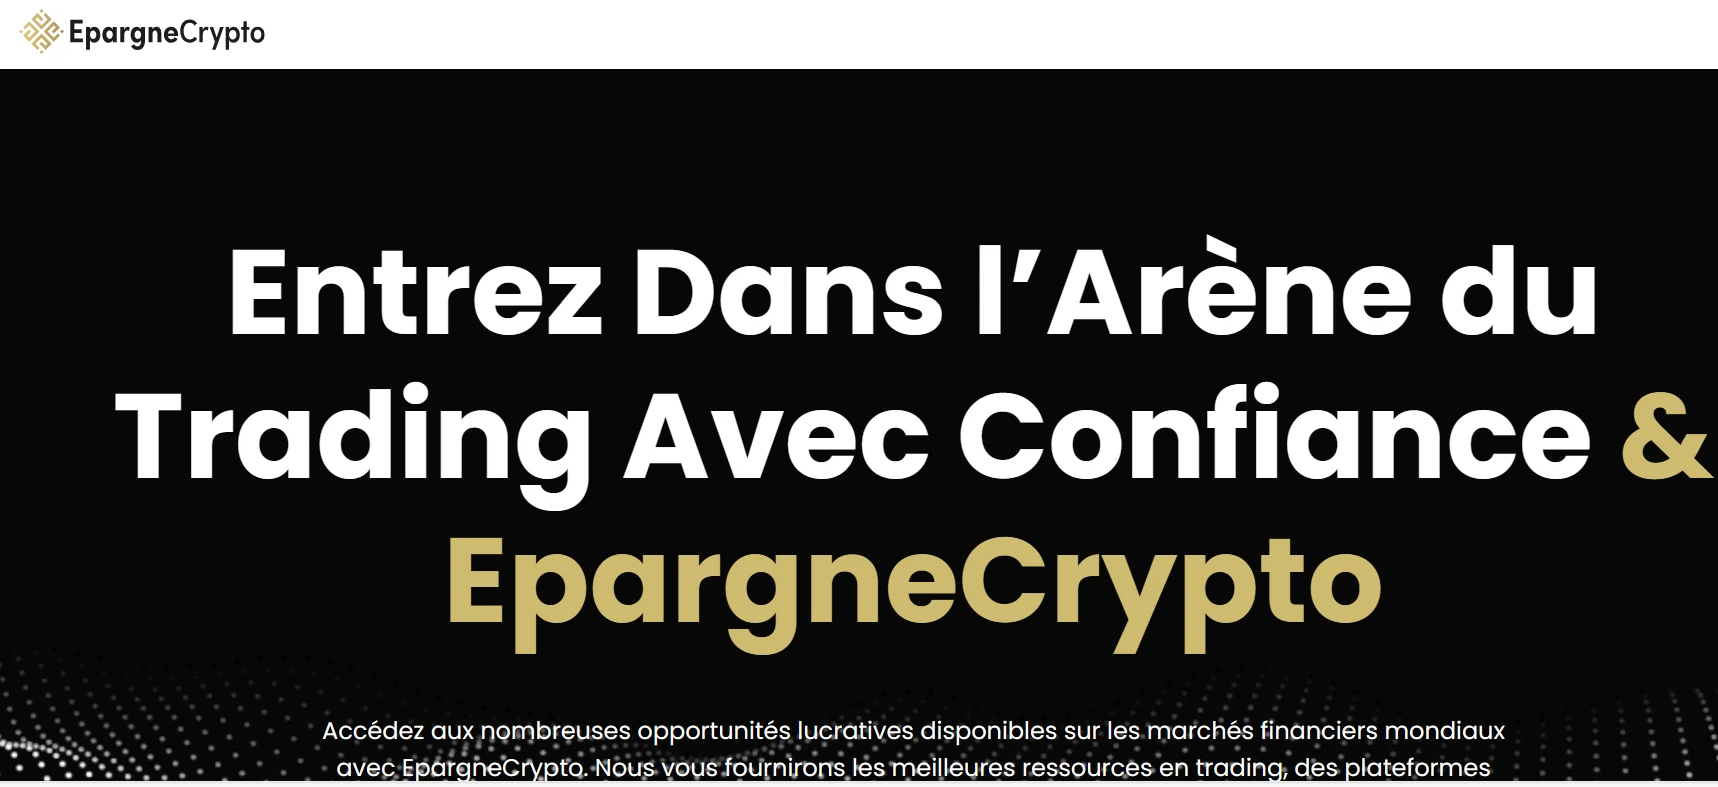 Capture d'écran du site EpargneCrypto révélant des failles